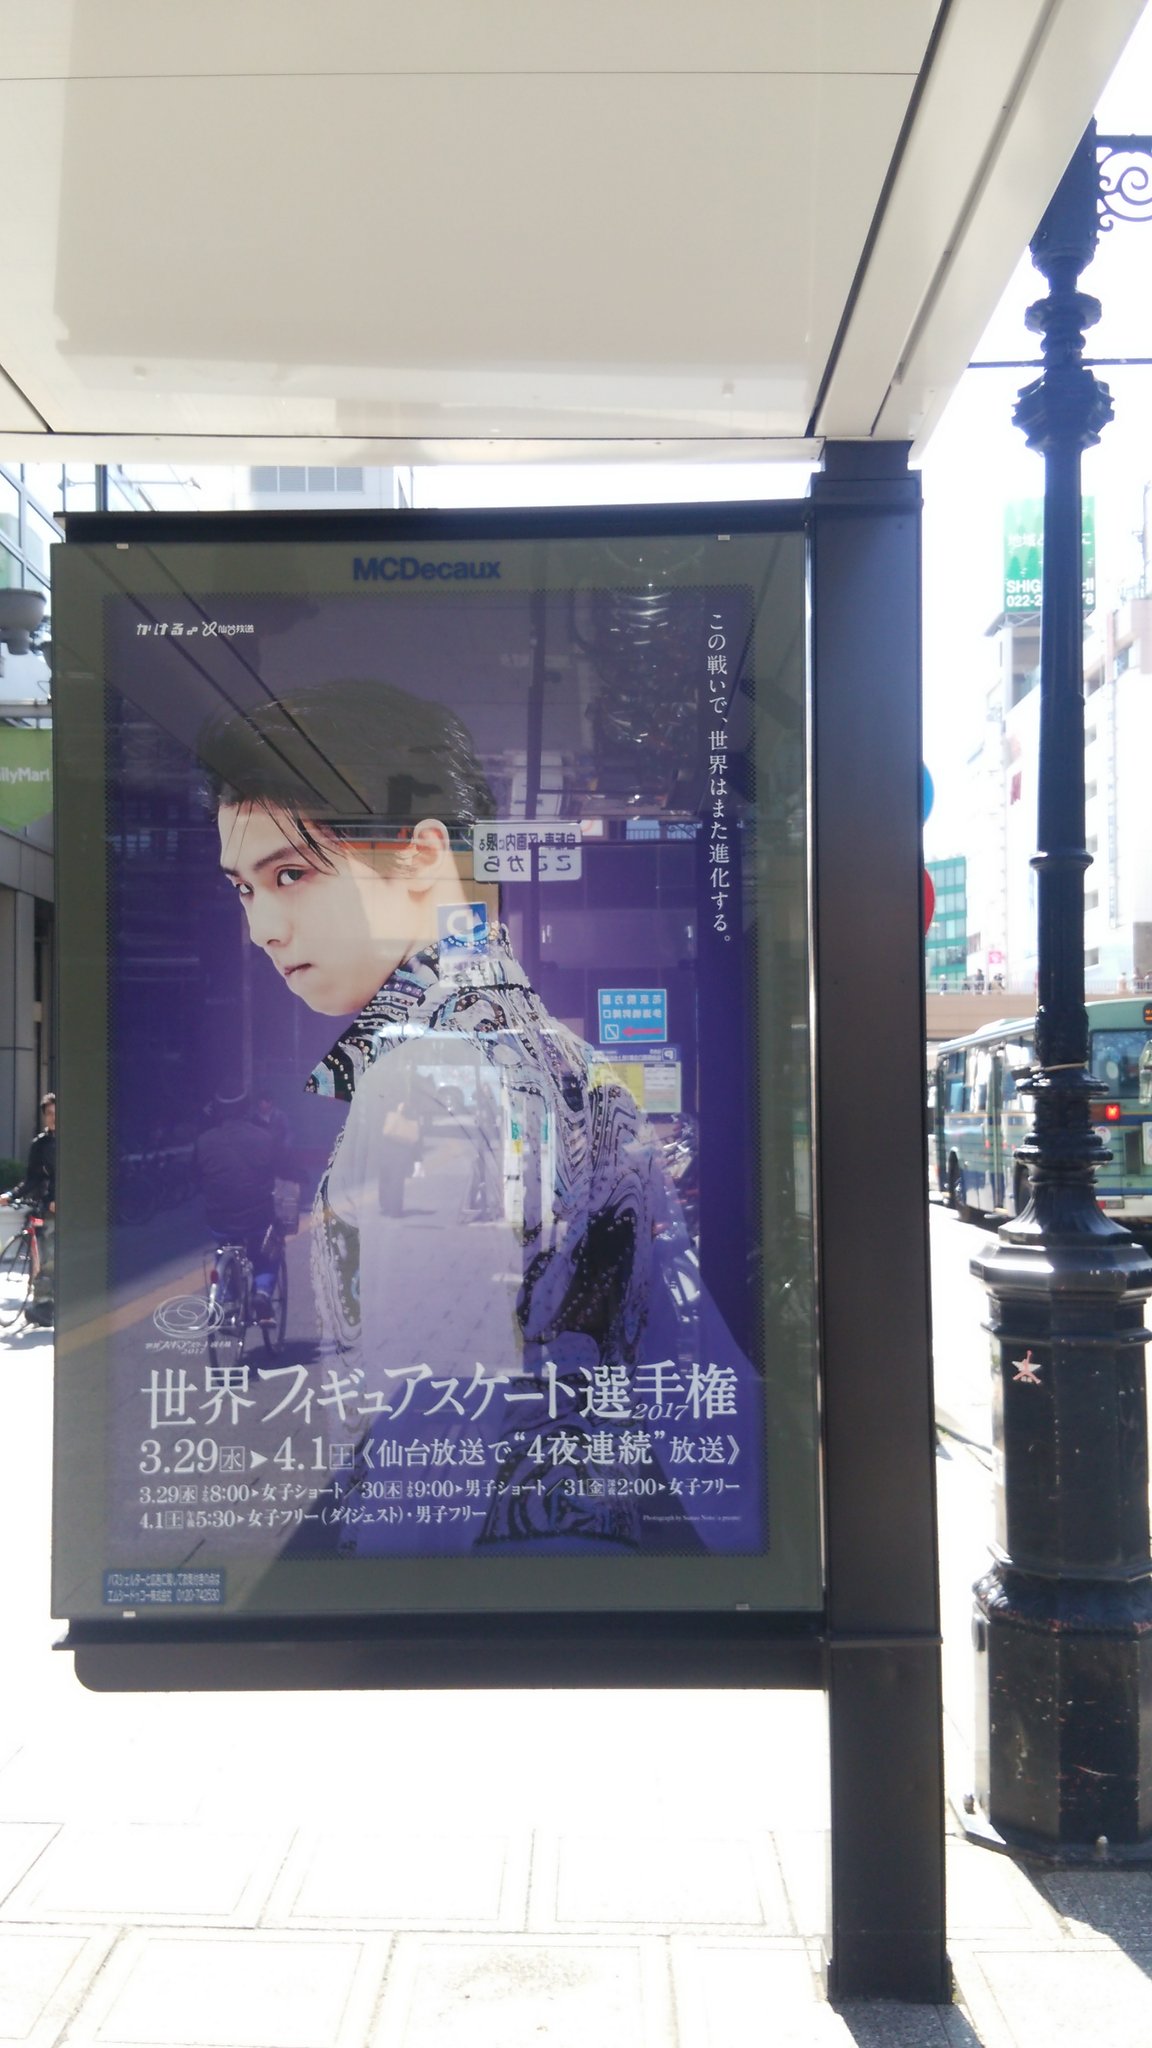 仙台駅に羽生結弦の世界選手権ポスターが設置される。凄くカッコ良すぎてヤバい